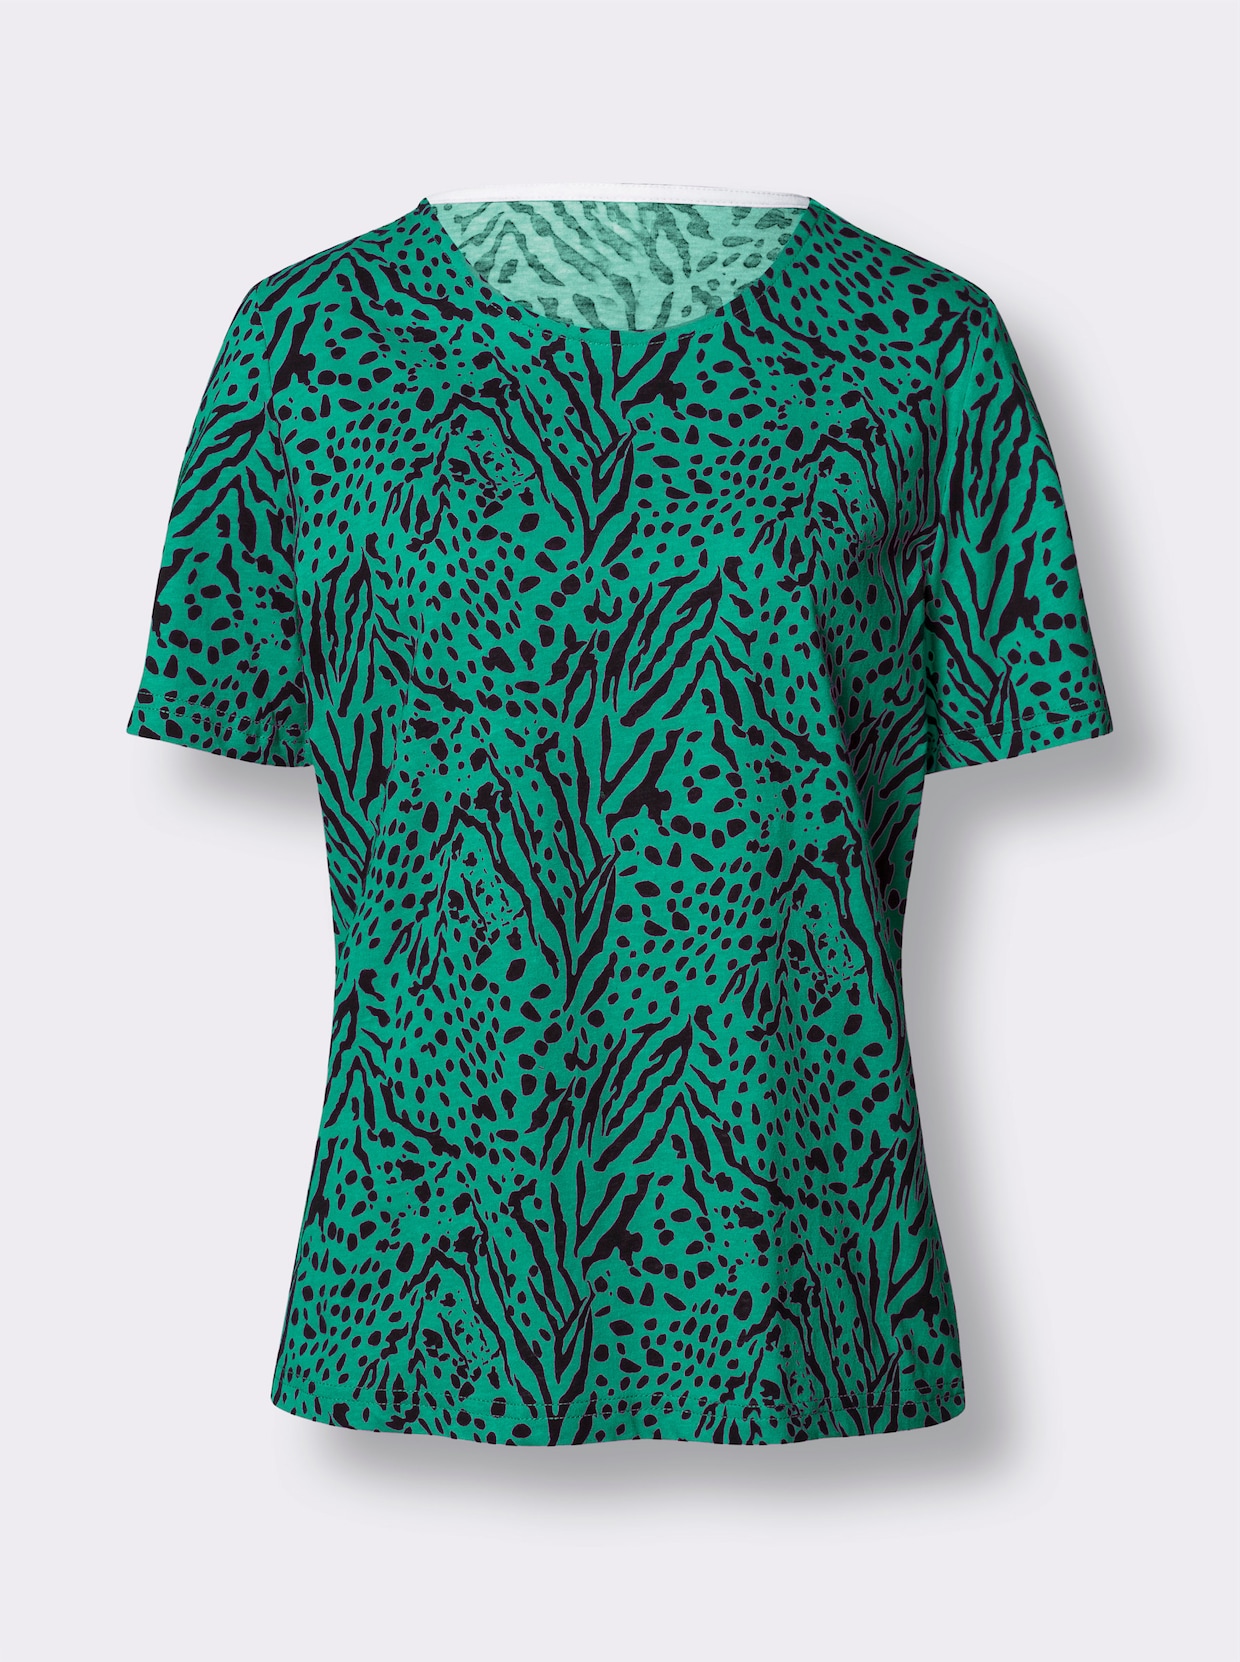 Tričko s krátkým rukávem - smaragdová-černá-potisk